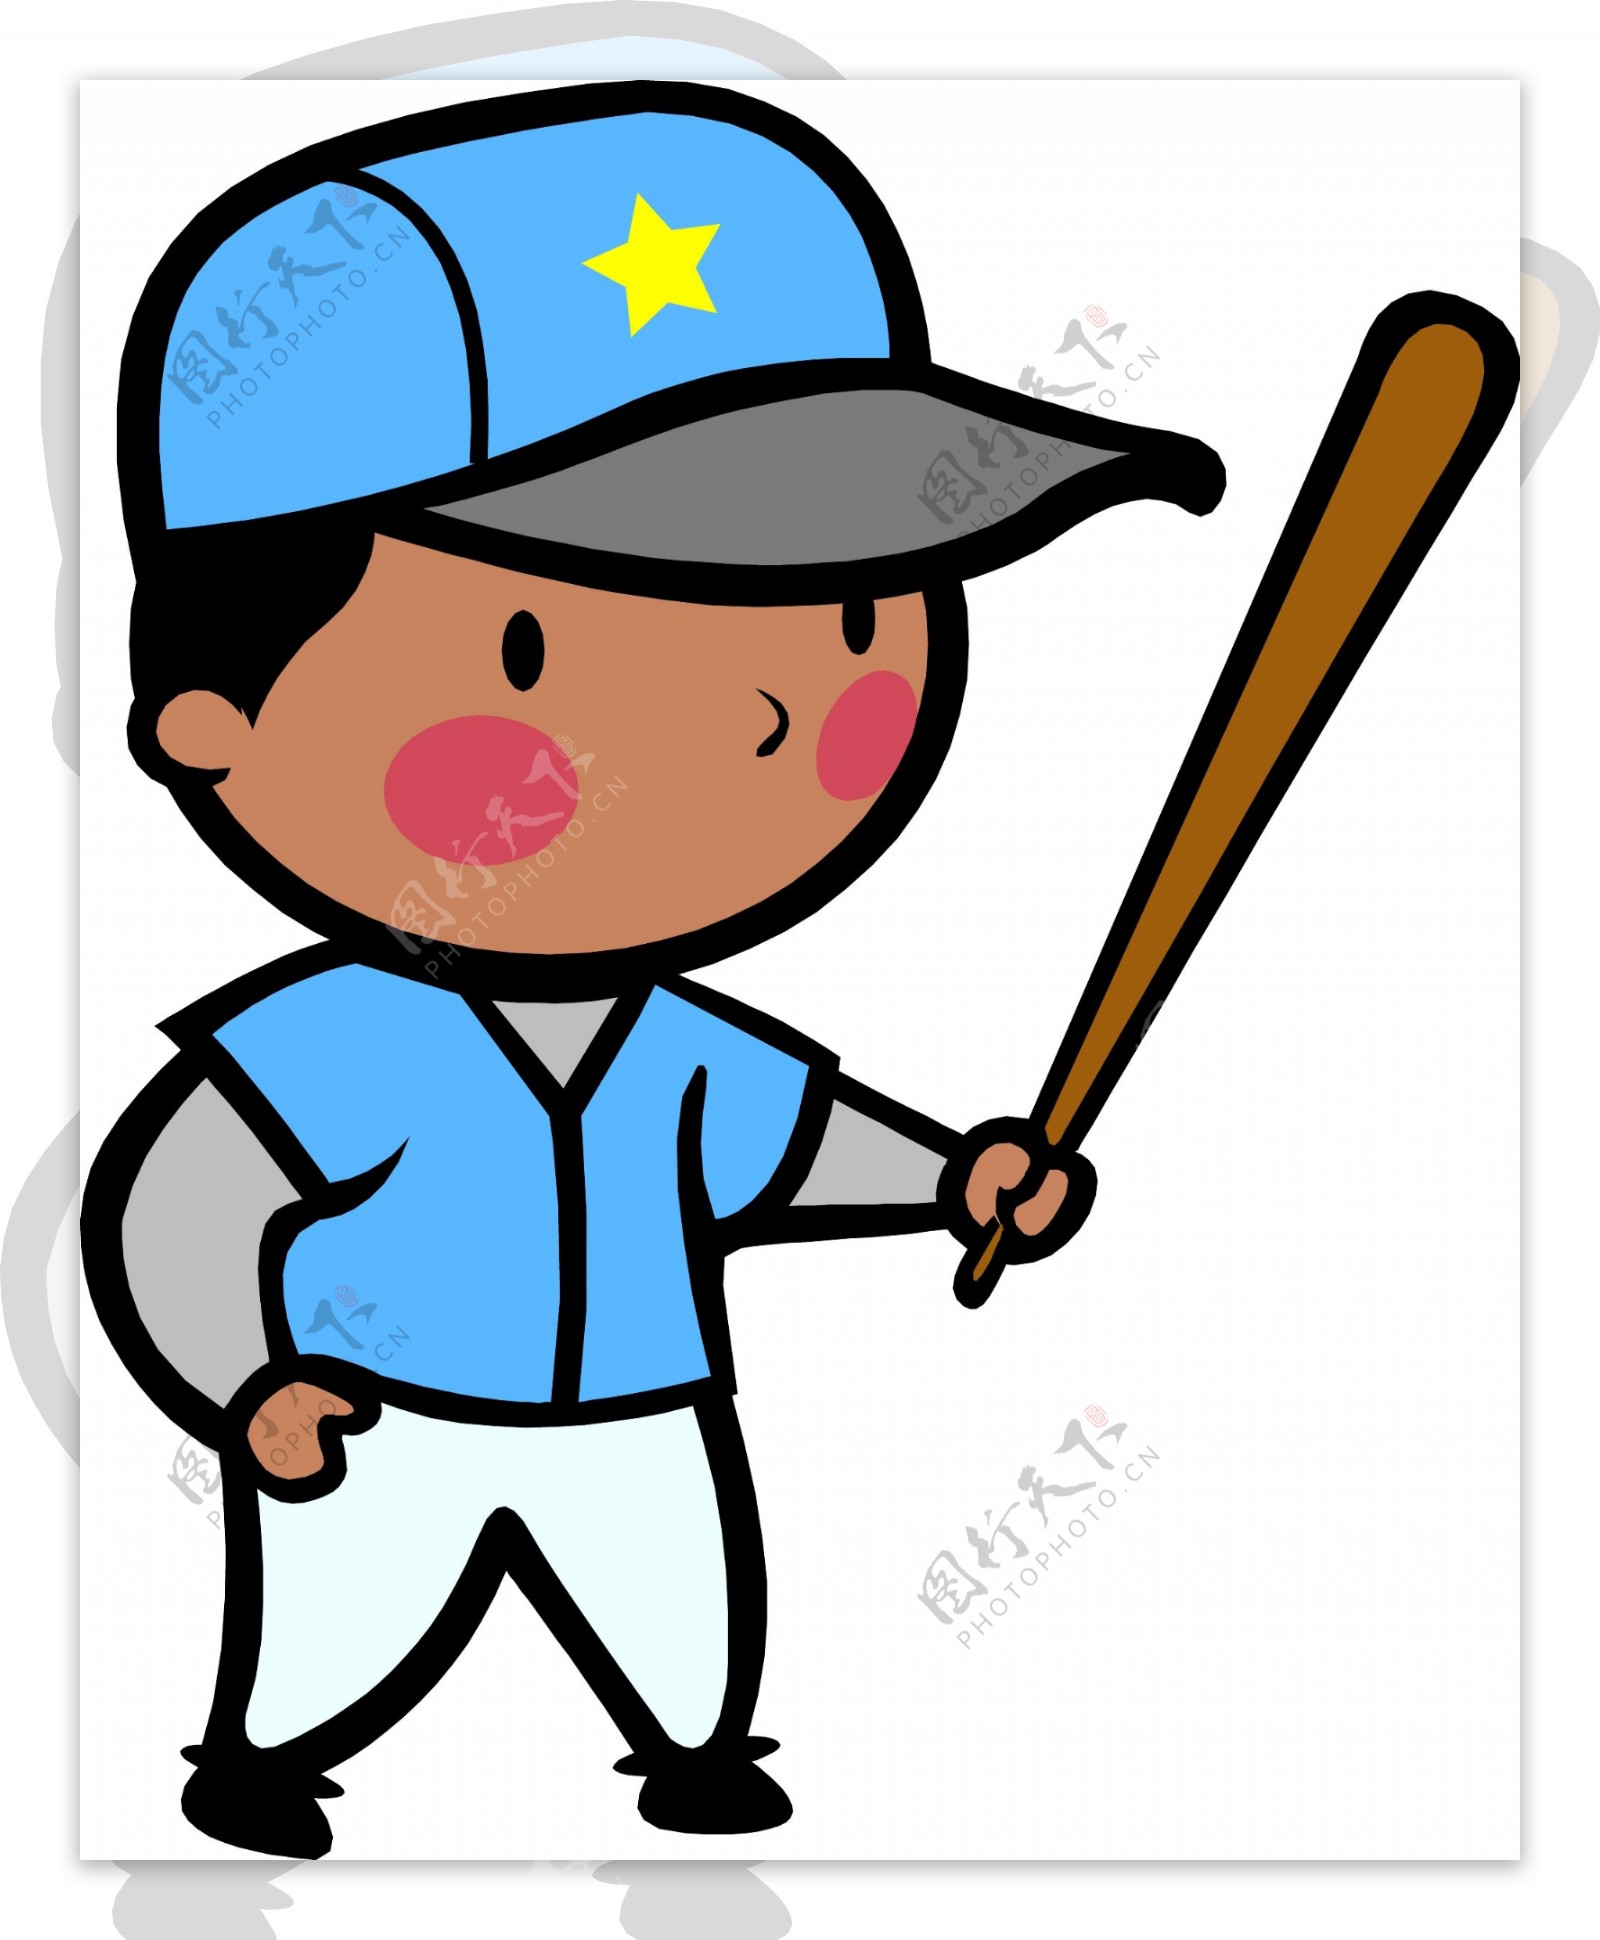 棒球寫實真實裝飾 照片, 棒球, 球類運動, 運動PNG去背圖片素材免費下載，免摳圖設計圖案下載 - Pngtree